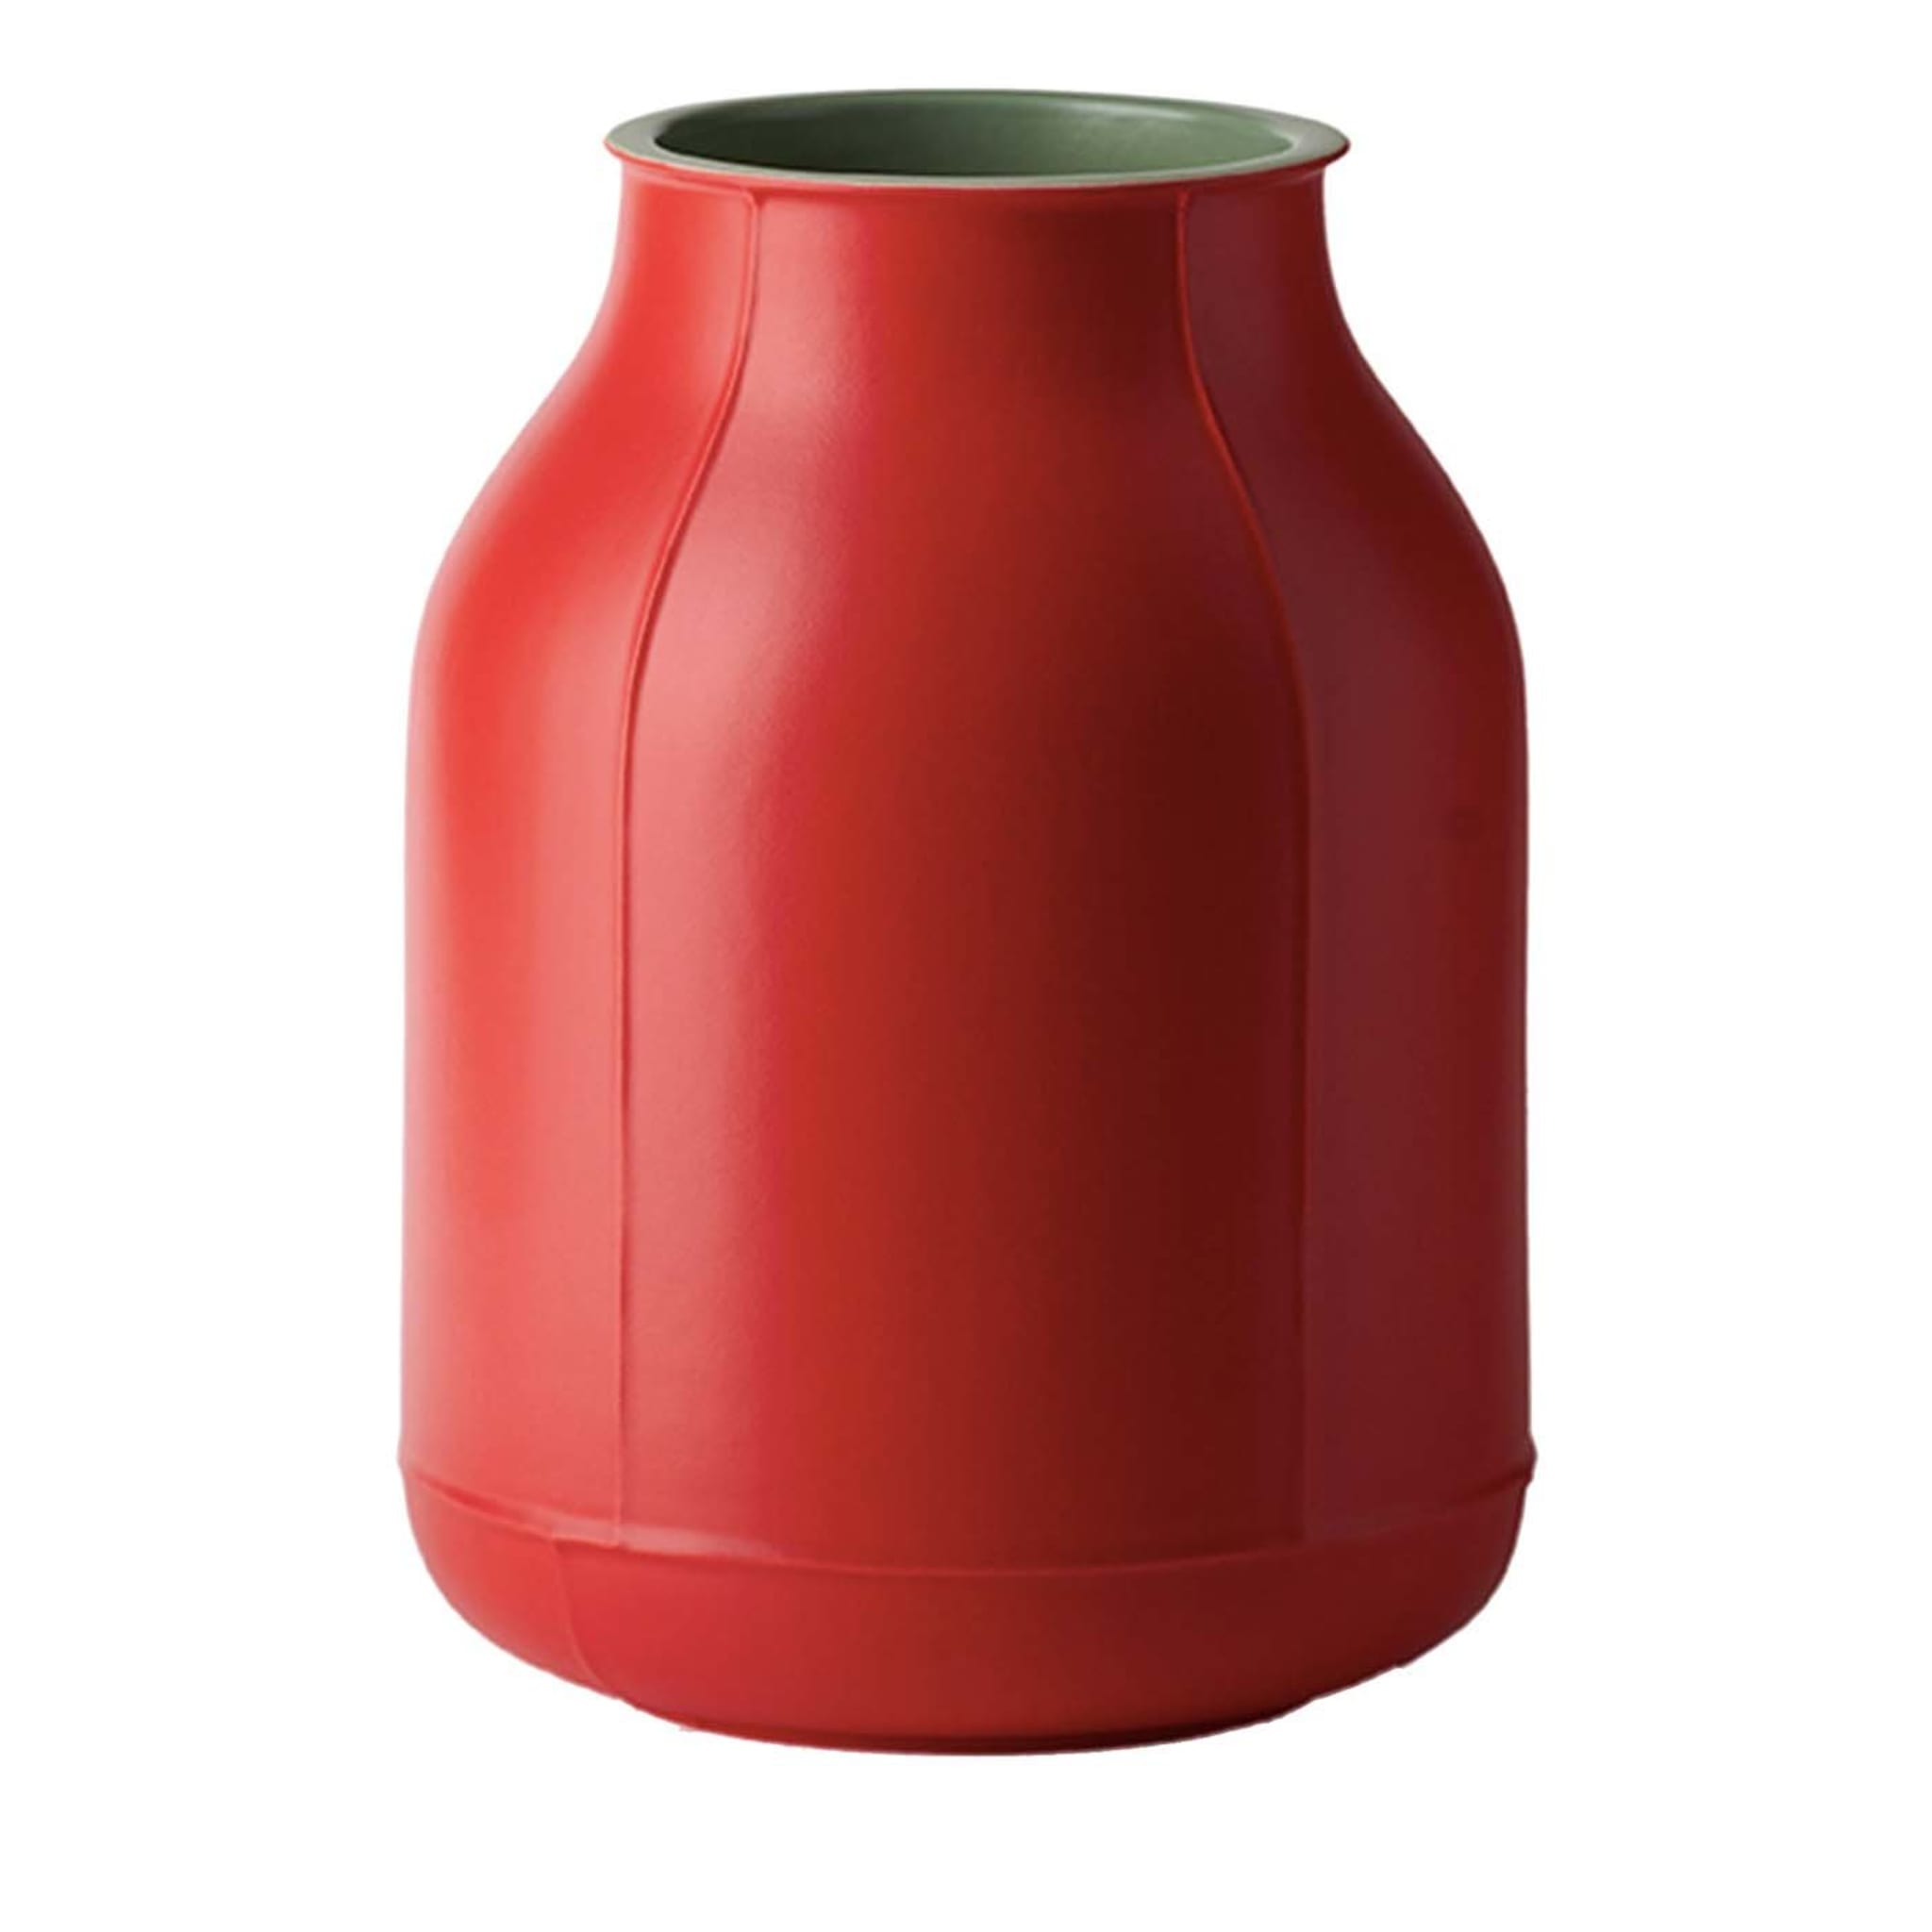 Large Red Barrel Vase by Benjamin Hubert - Main view